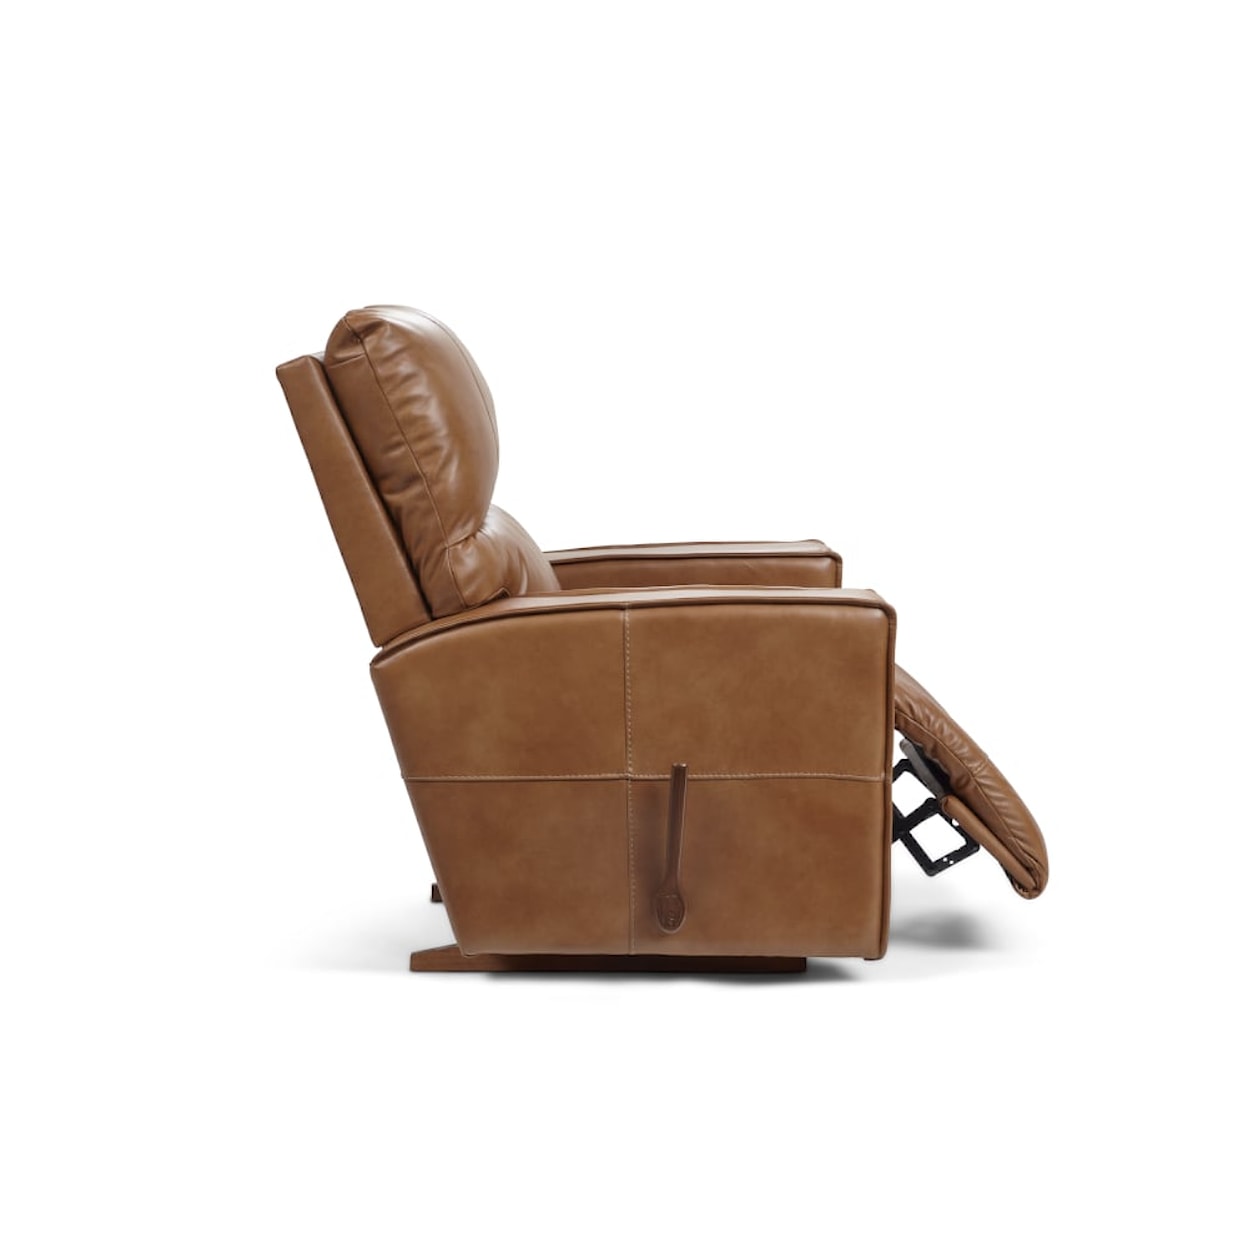 La-Z-Boy Maddox Power Reclining Chair and a Half w/ Headrest